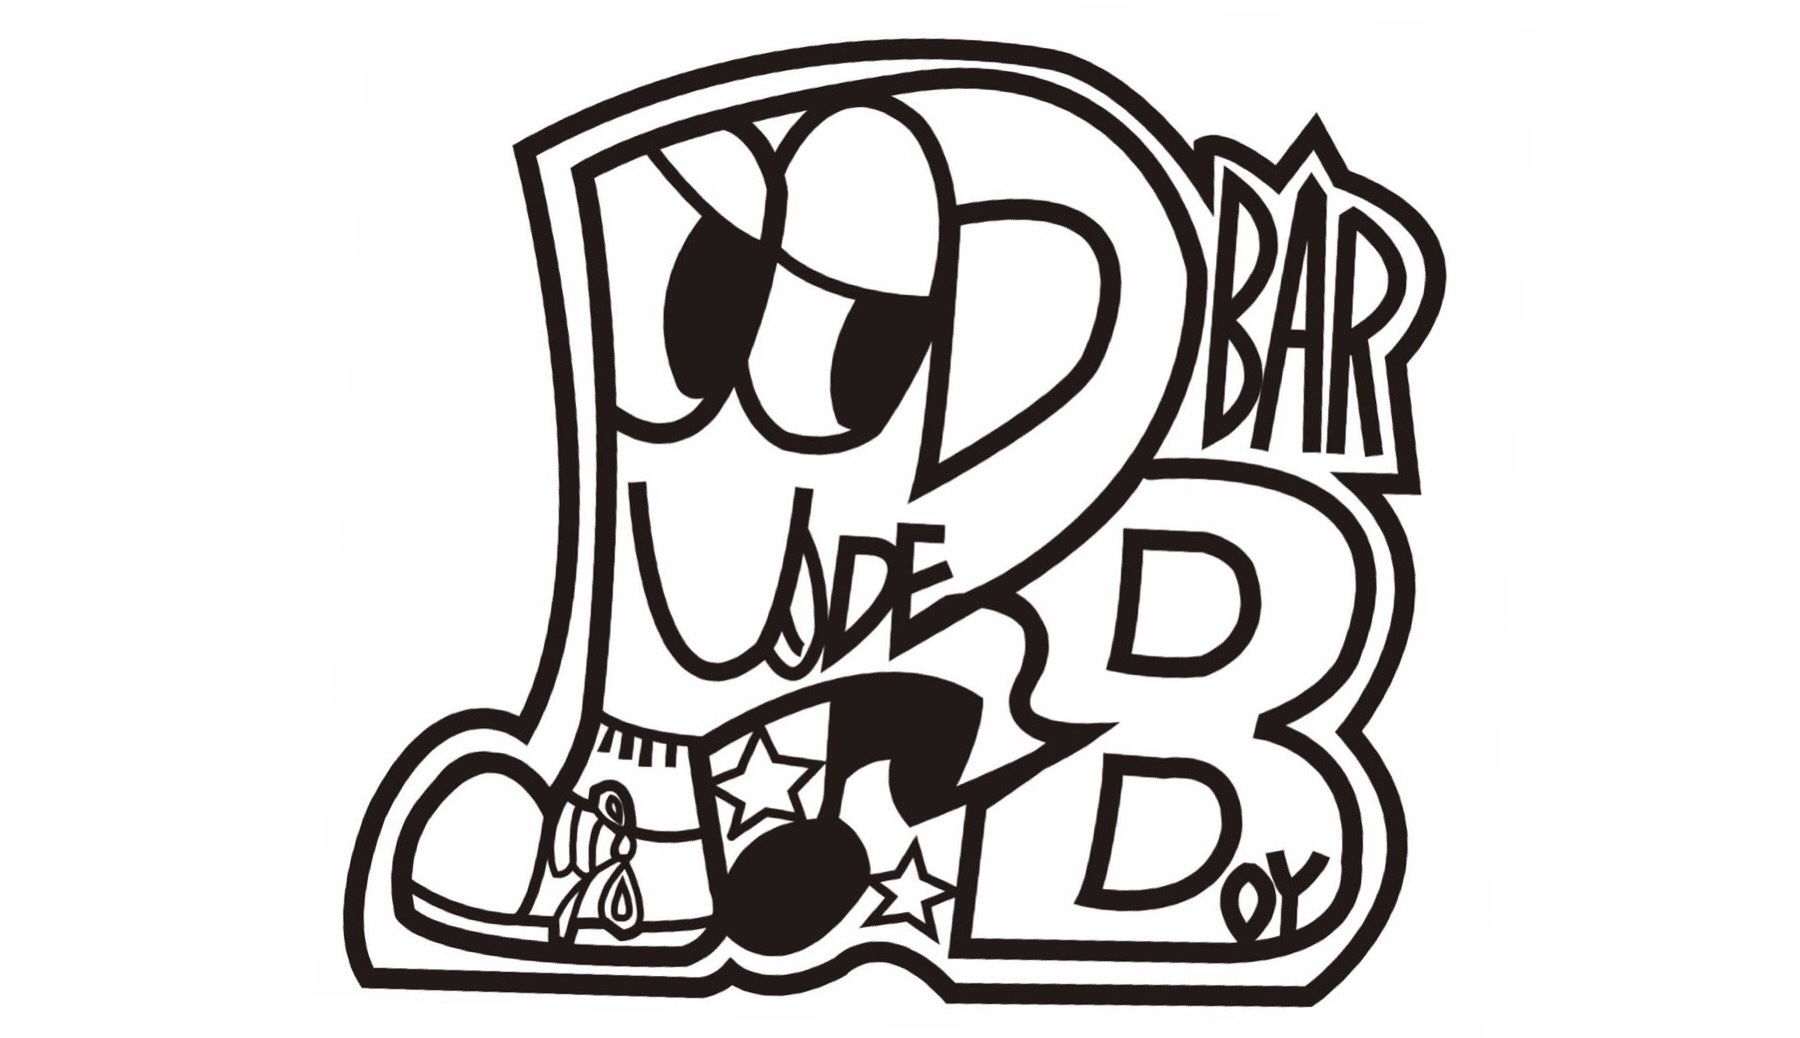 Bar Rude Boy ロゴデザイン